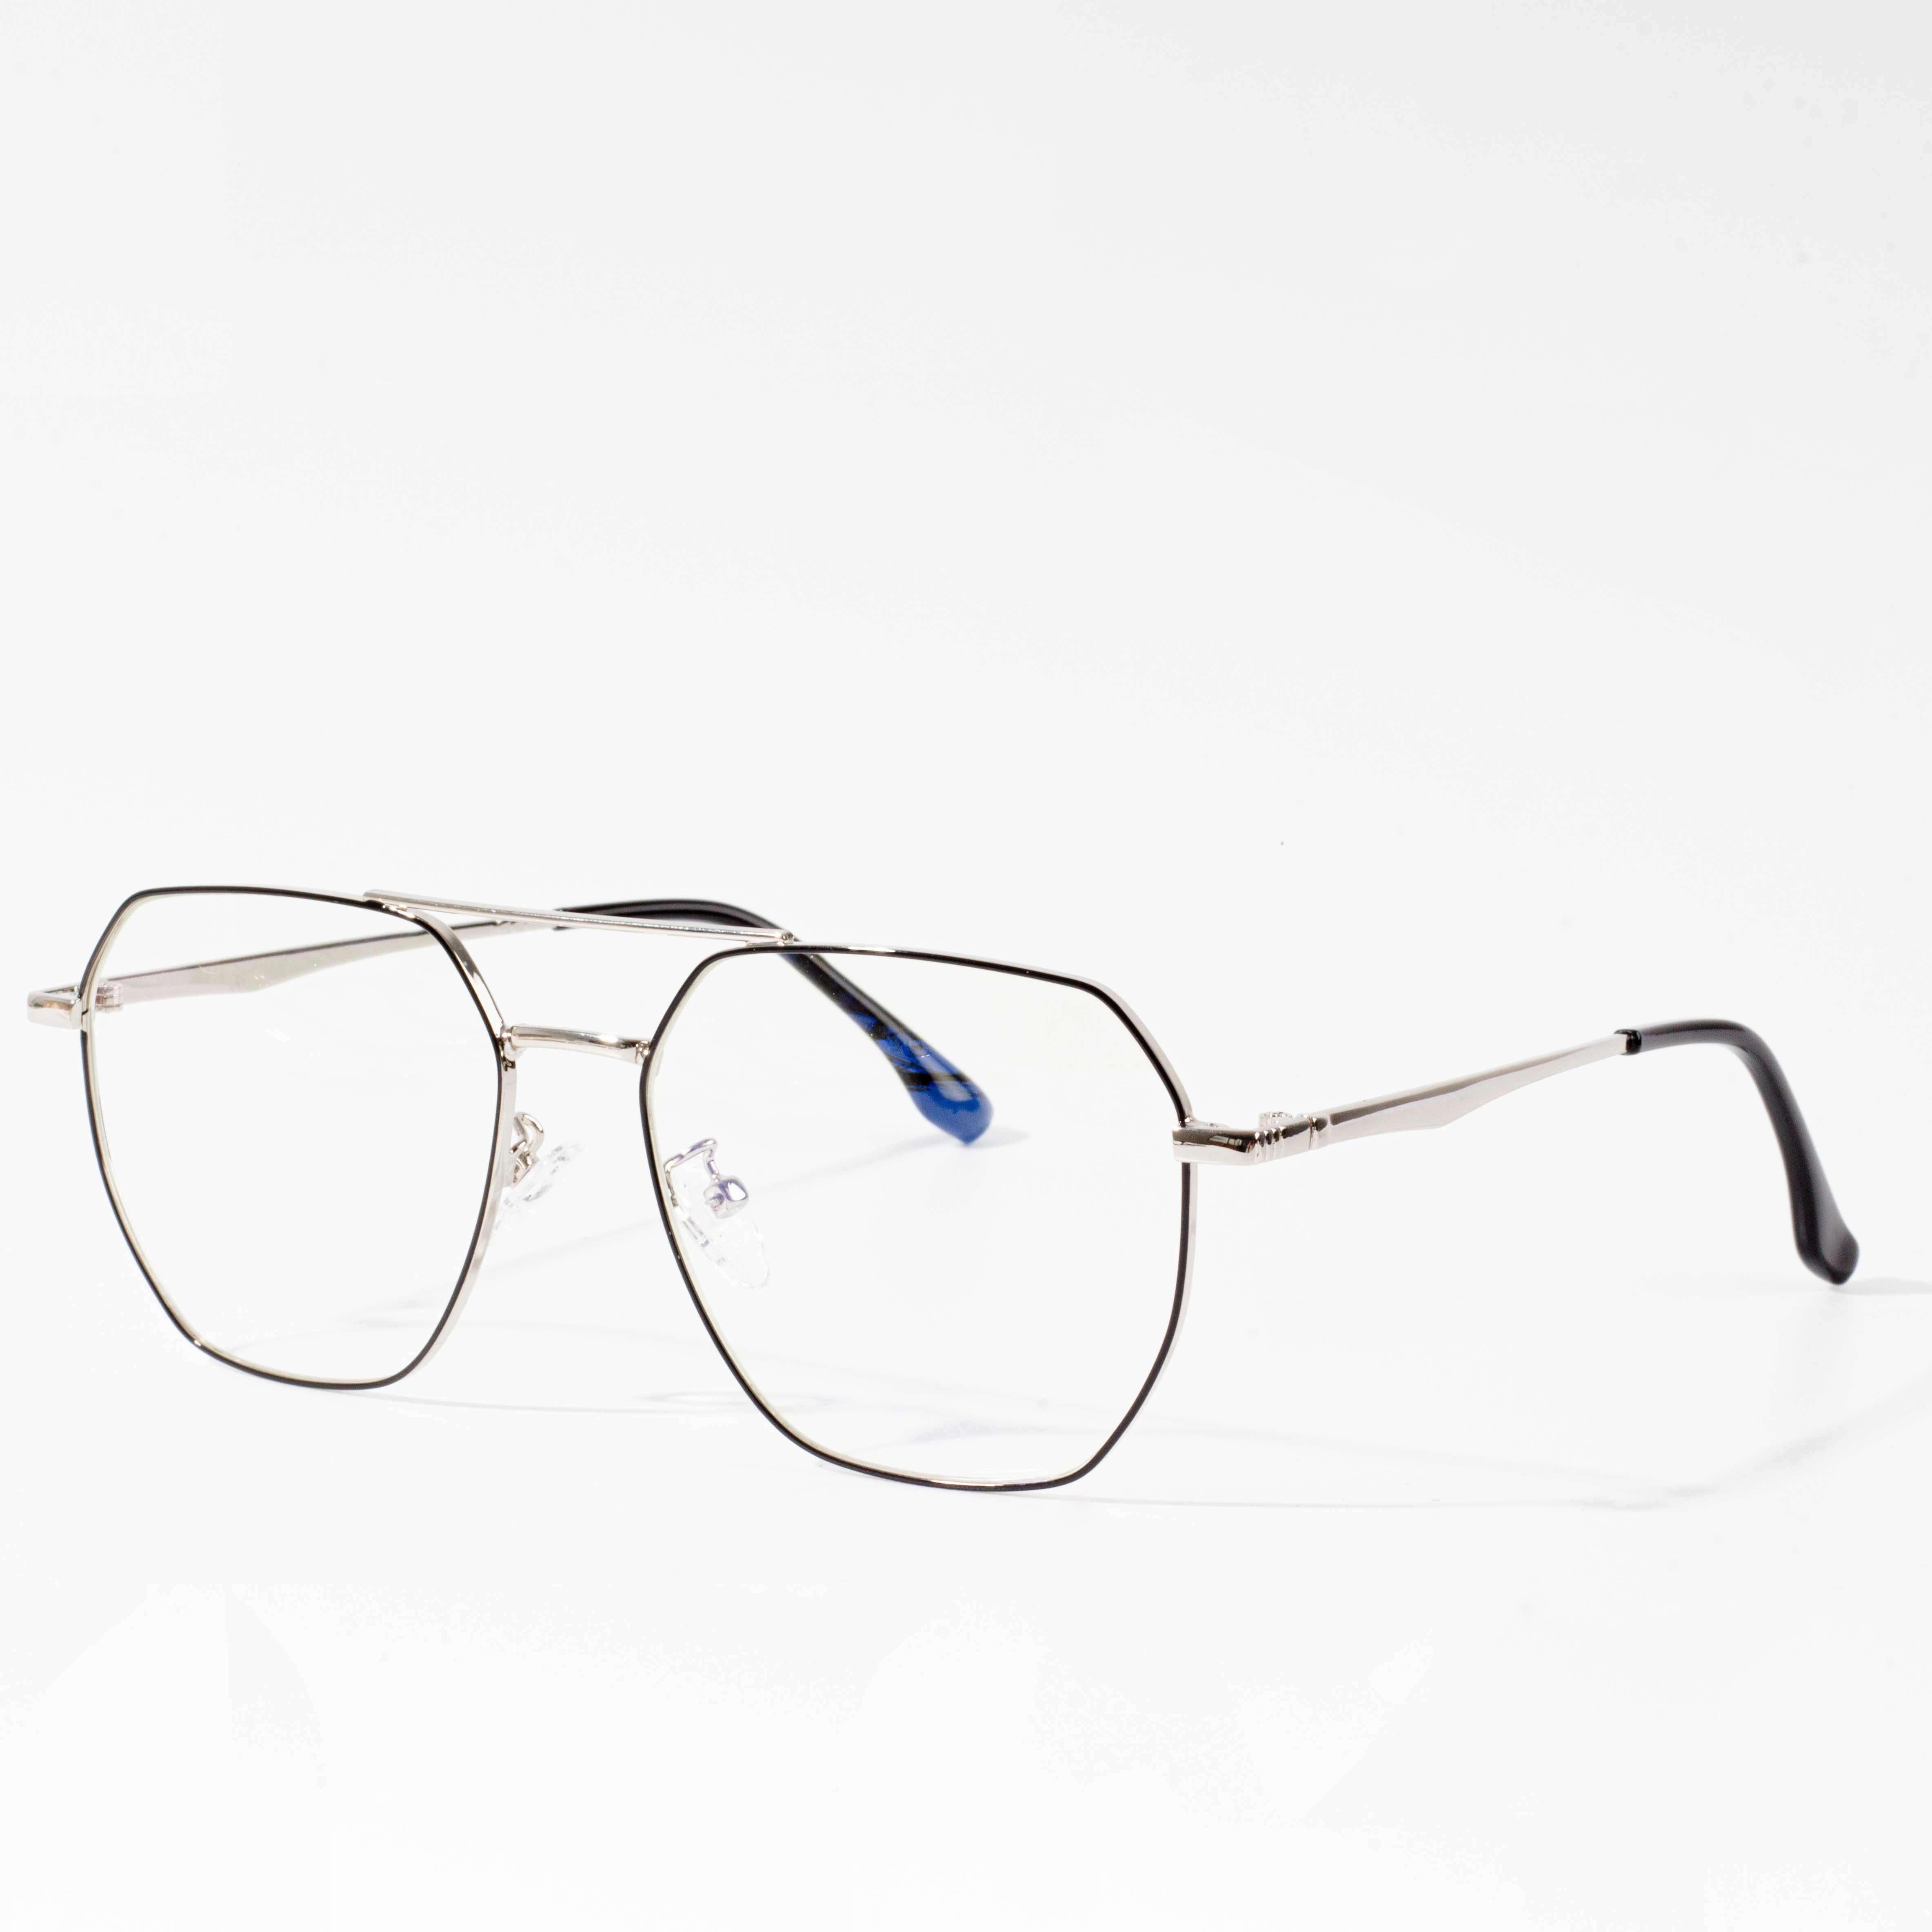 akinių rėmelių stiliai